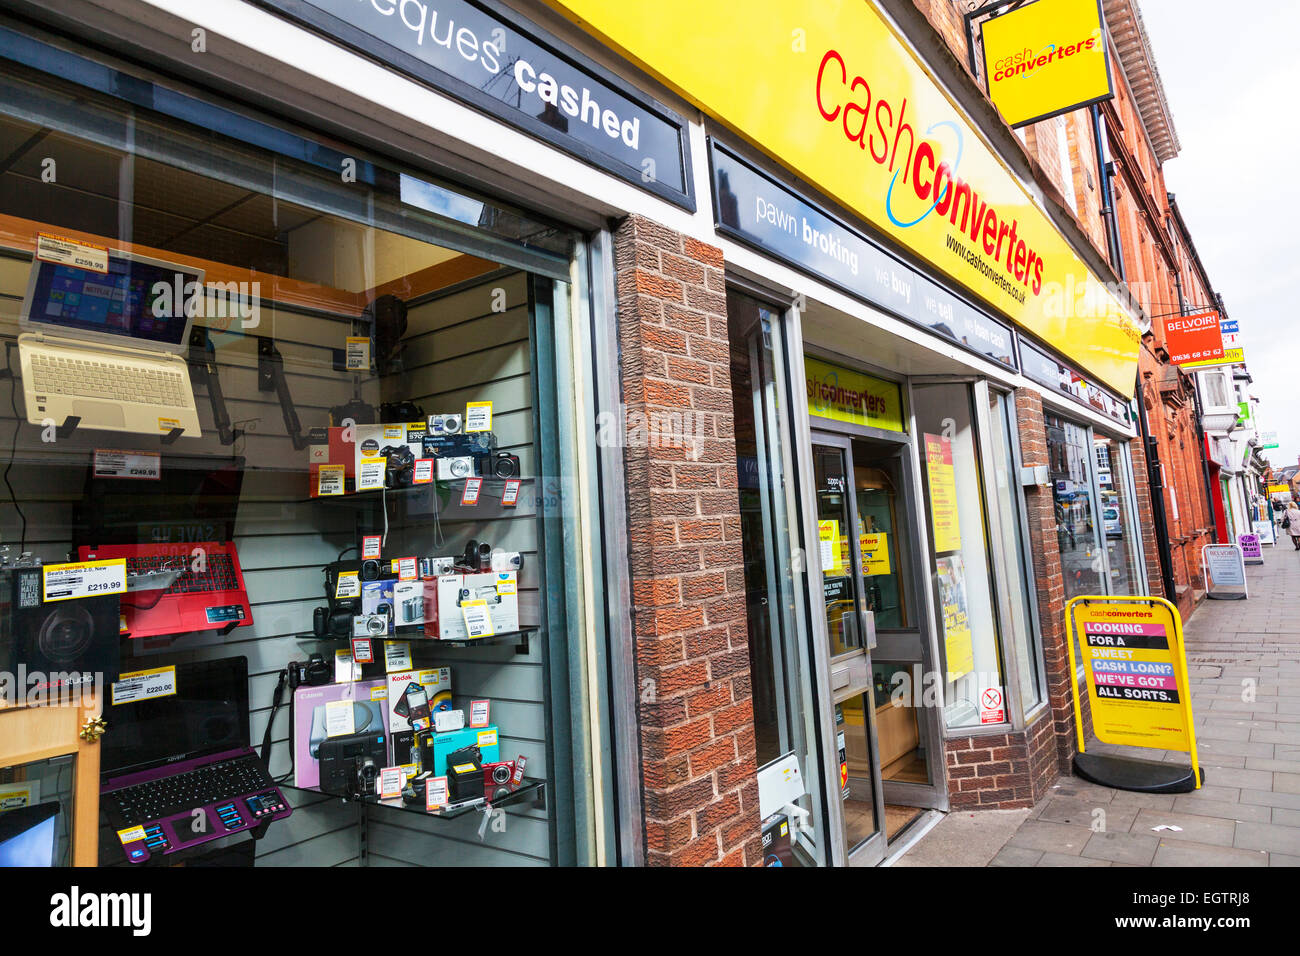 Boutique magasin Cash converters signe la façade extérieure avant les marchandises en gage gage sur Newark Nottinghamshire UK Angleterre Trent Banque D'Images